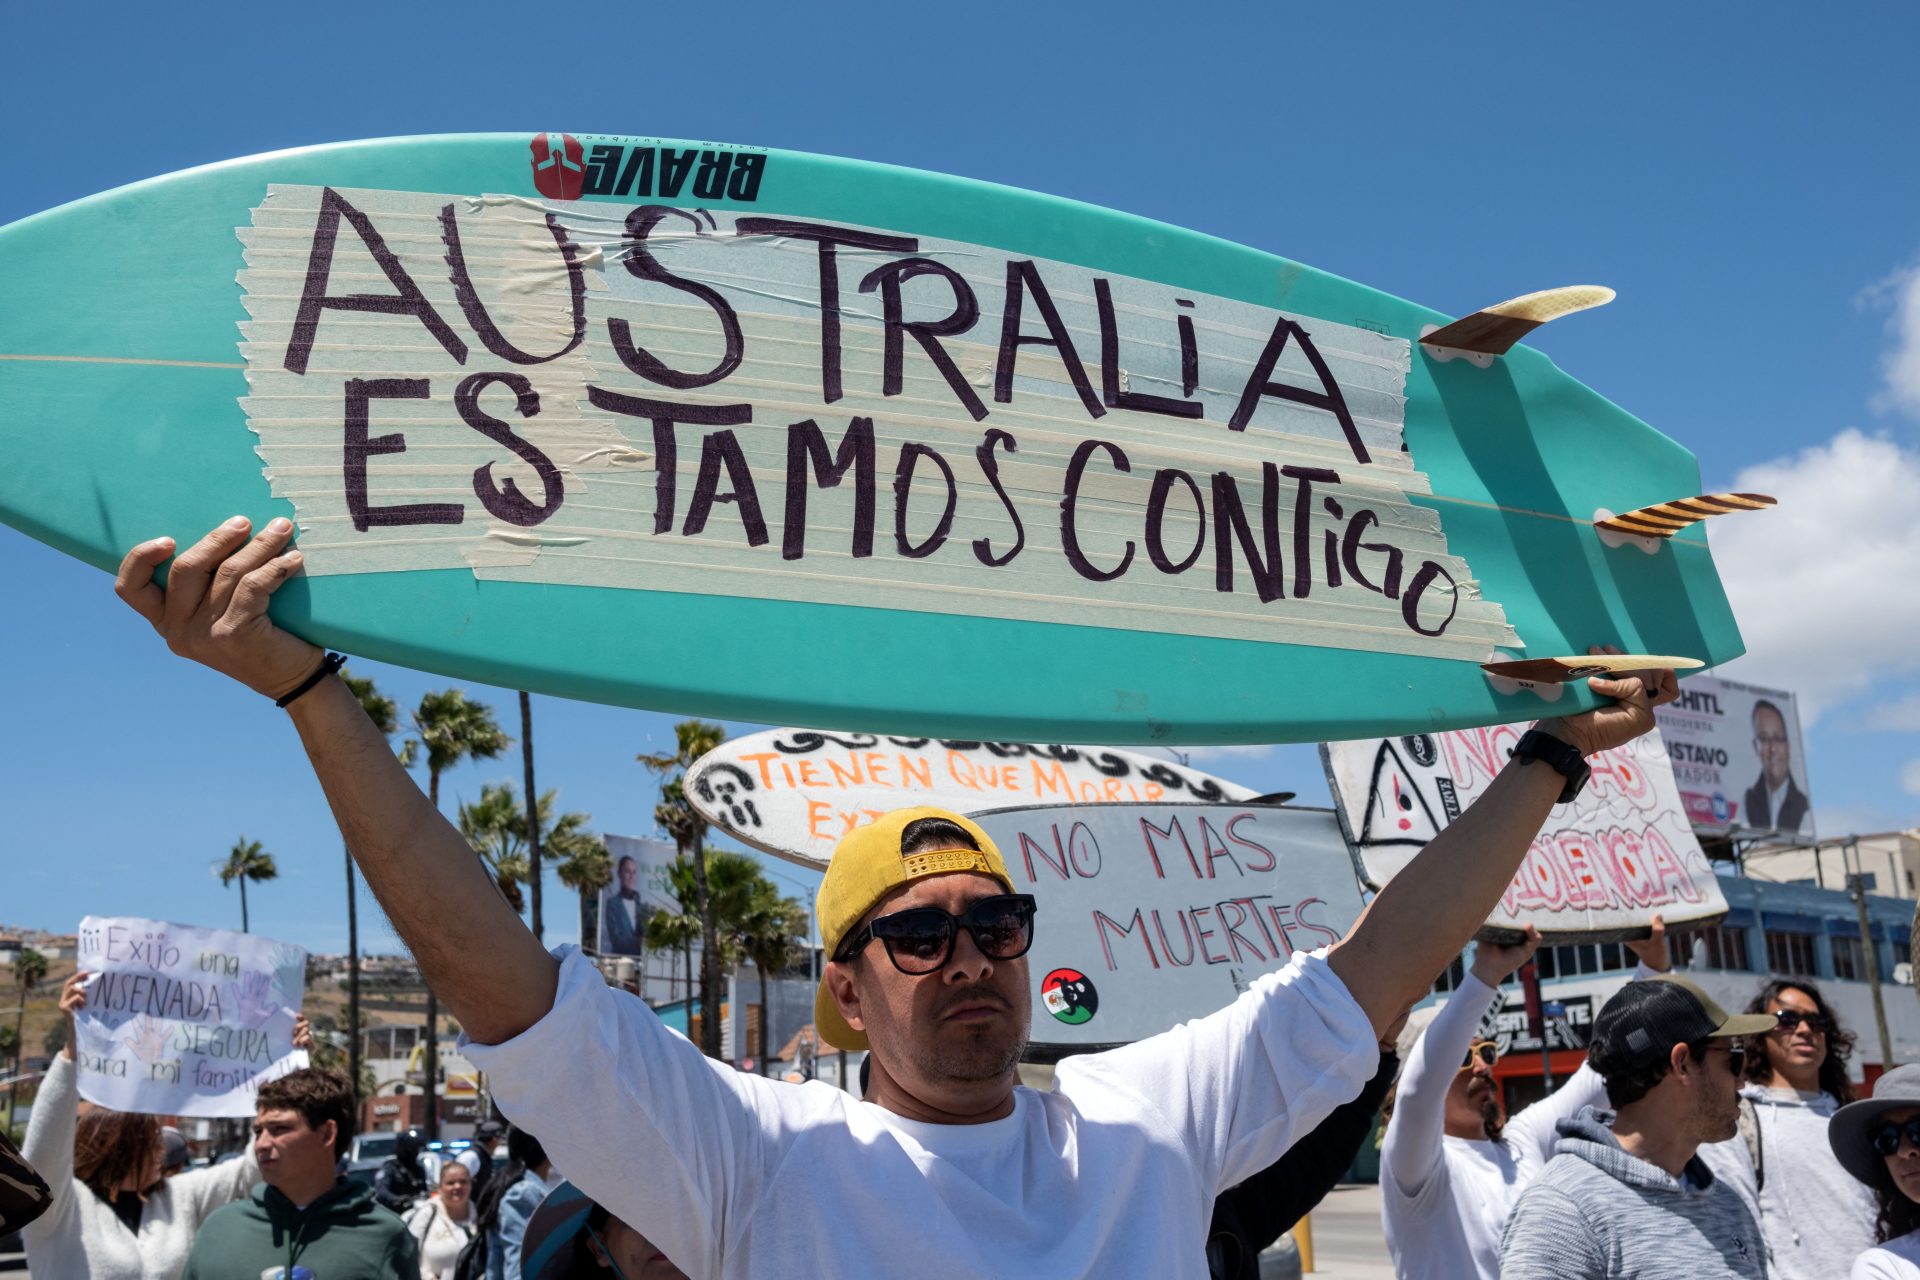 Corps de surfeurs australien et américain assassinés identifiés au Mexique